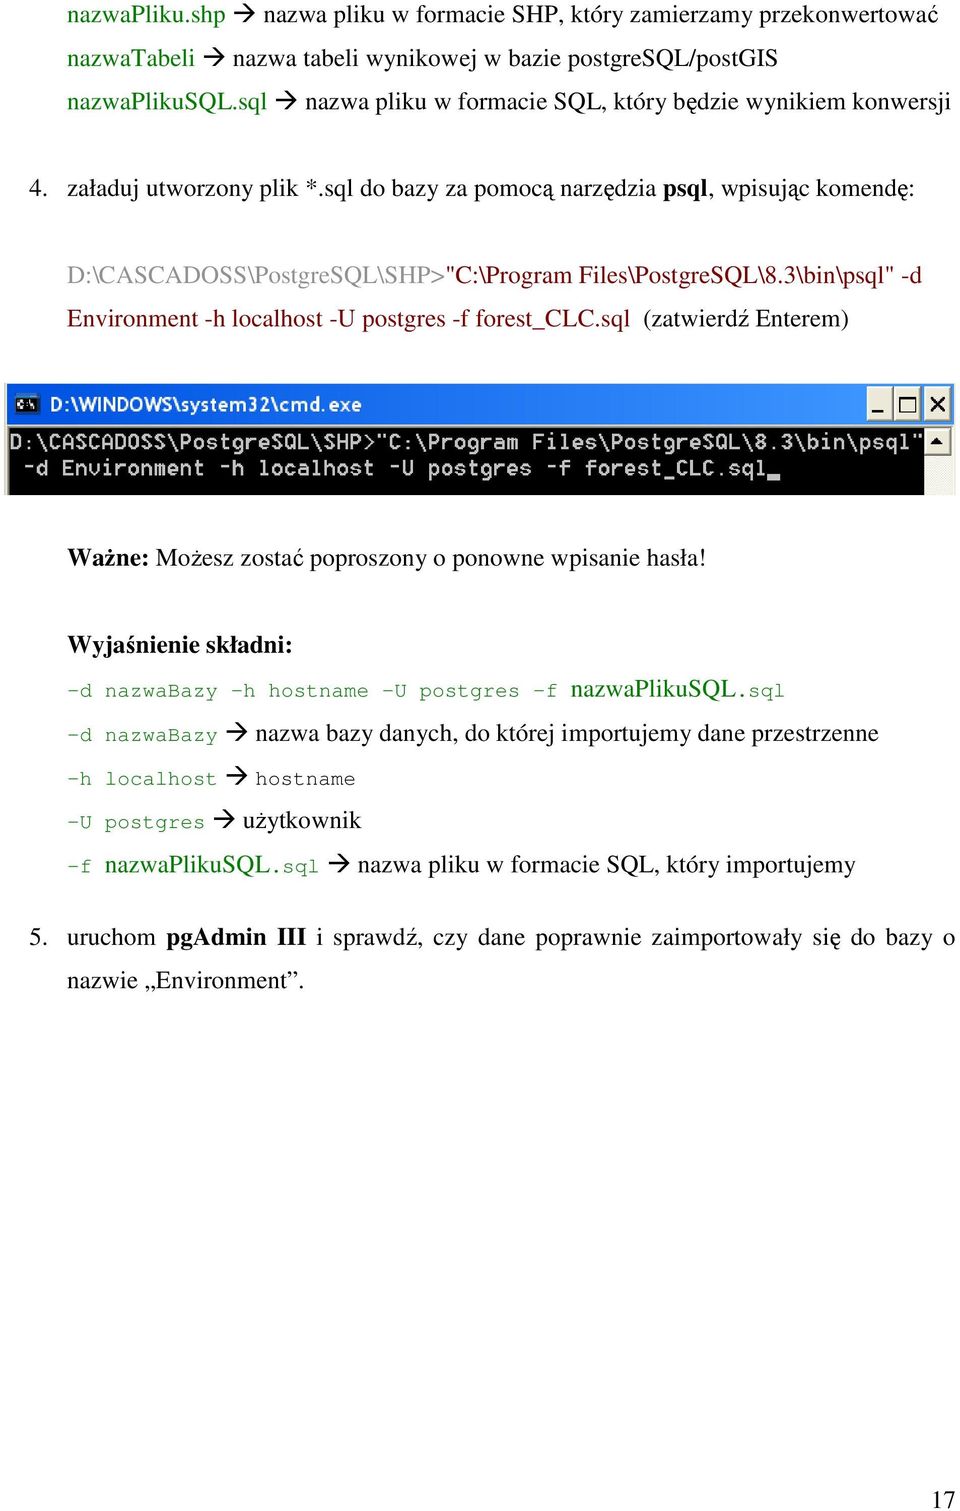 sql do bazy za pomocą narzędzia psql, wpisując komendę: D:\CASCADOSS\PostgreSQL\SHP>"C:\Program Files\PostgreSQL\8.3\bin\psql" -d Environment -h localhost -U postgres -f forest_clc.